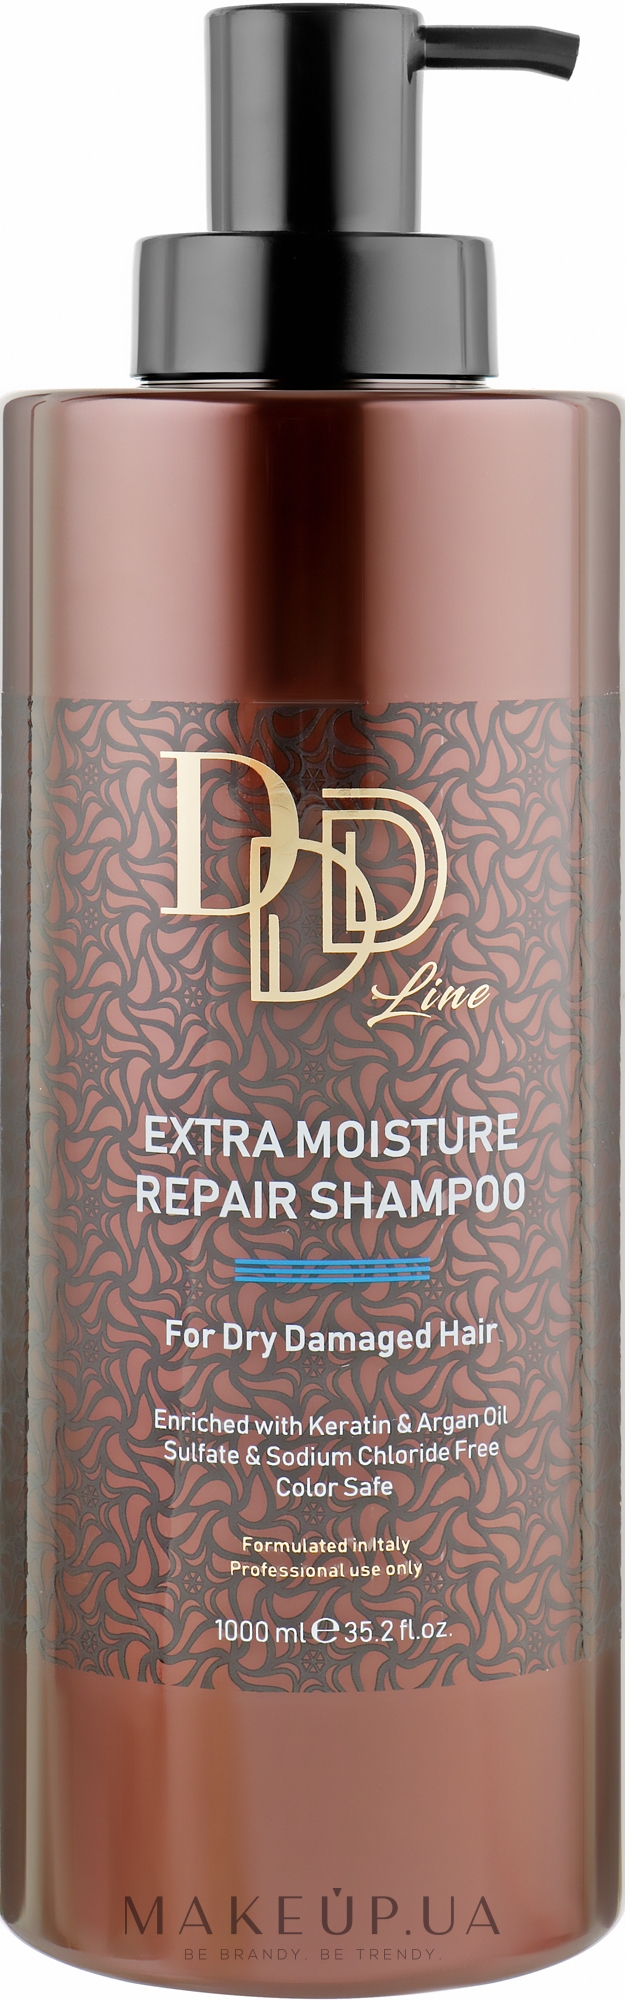 Увлажняющий шампунь для восстановления волос - Clever Hair Cosmetics 3D Line Extra Moisture Repair Shampoo — фото 1000ml